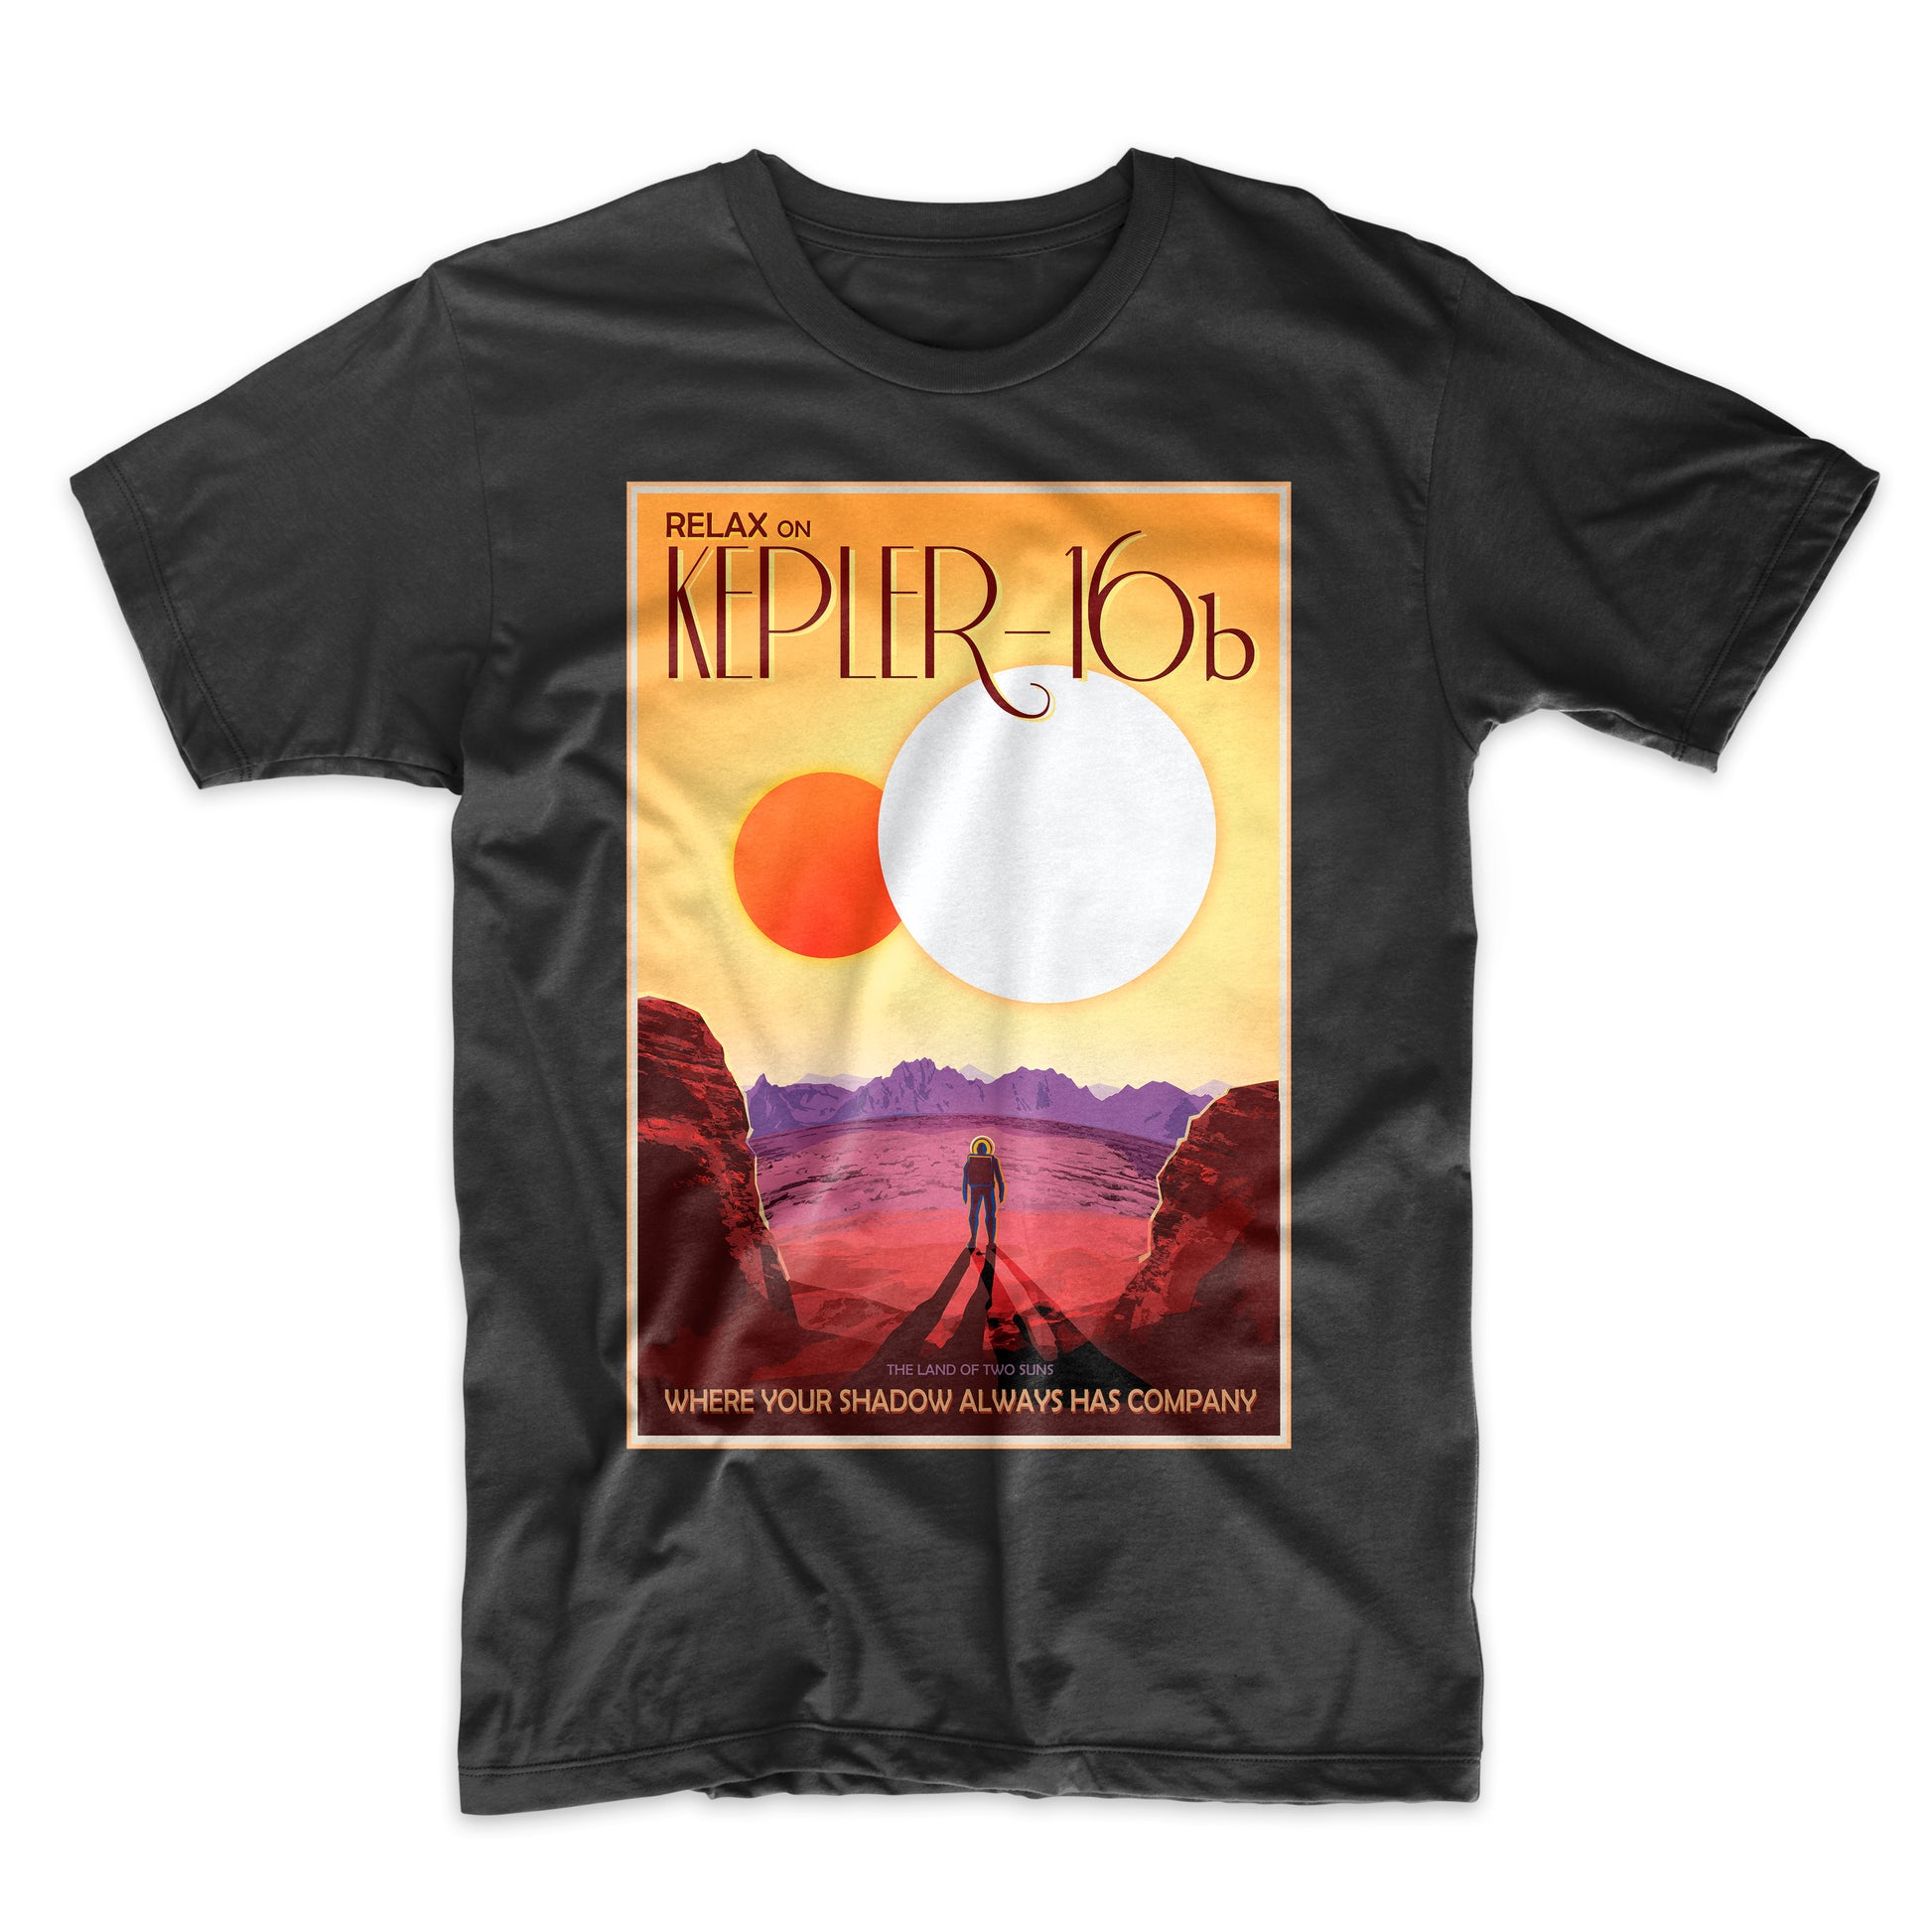 Kepler 16b T-Shirt. NASA's Visions of the Future - Mighty Circus